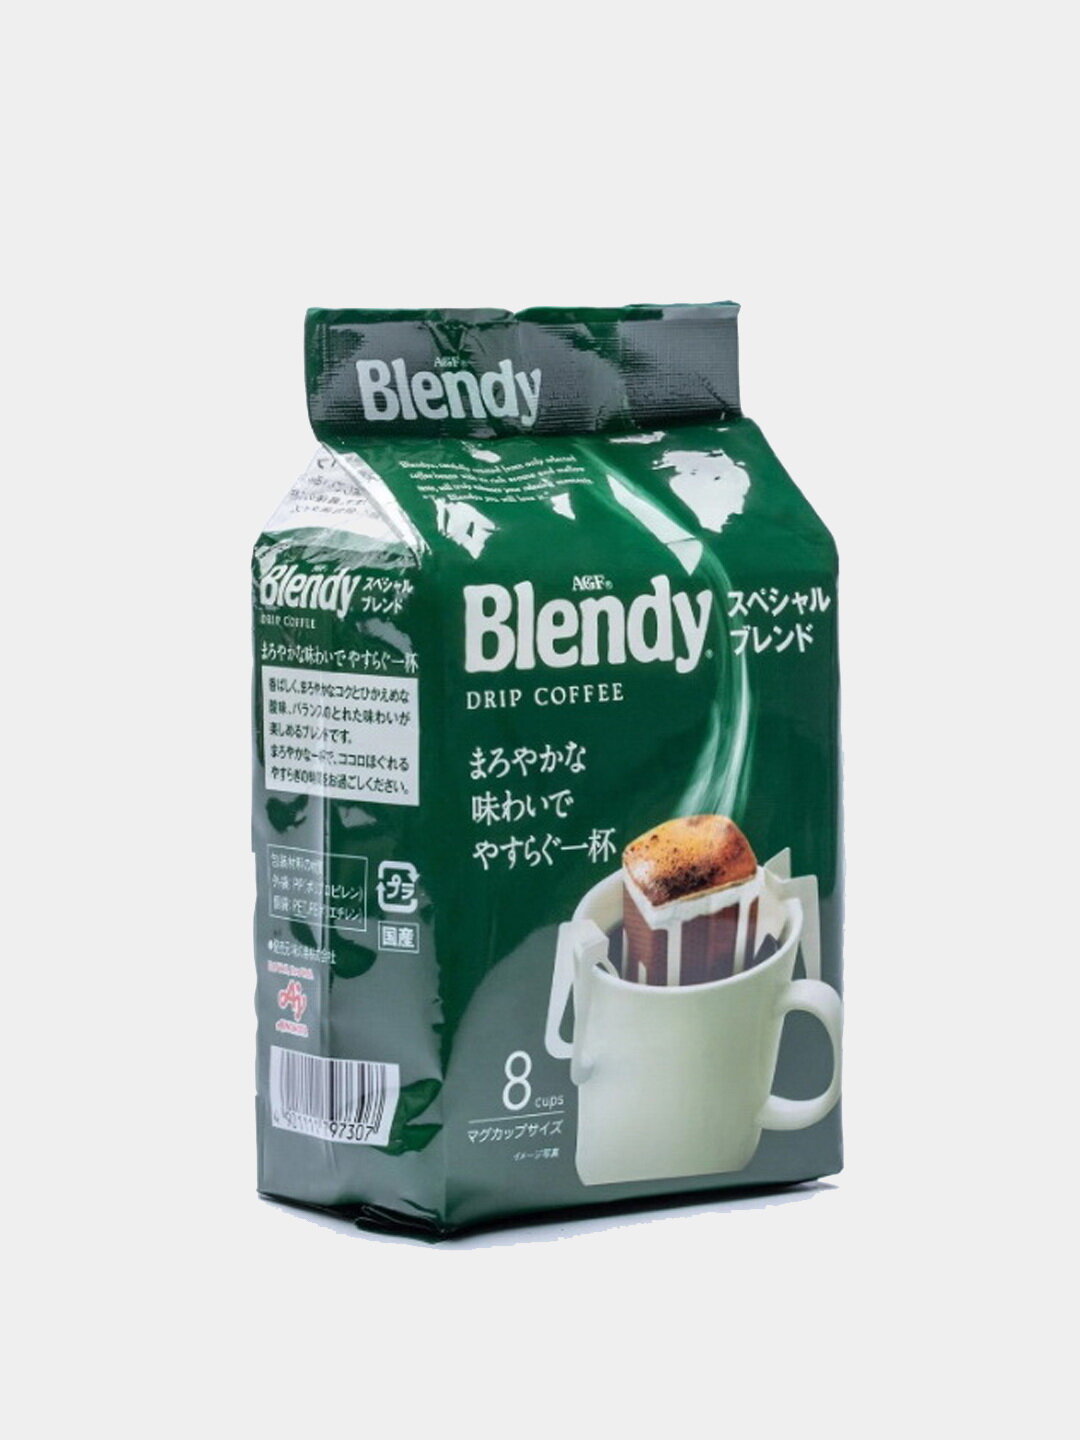 Японский молотый кофе средней обжарки AGF Blendy MILD BLEND в дрип-пакетах ( drip ), упаковка 8 штук